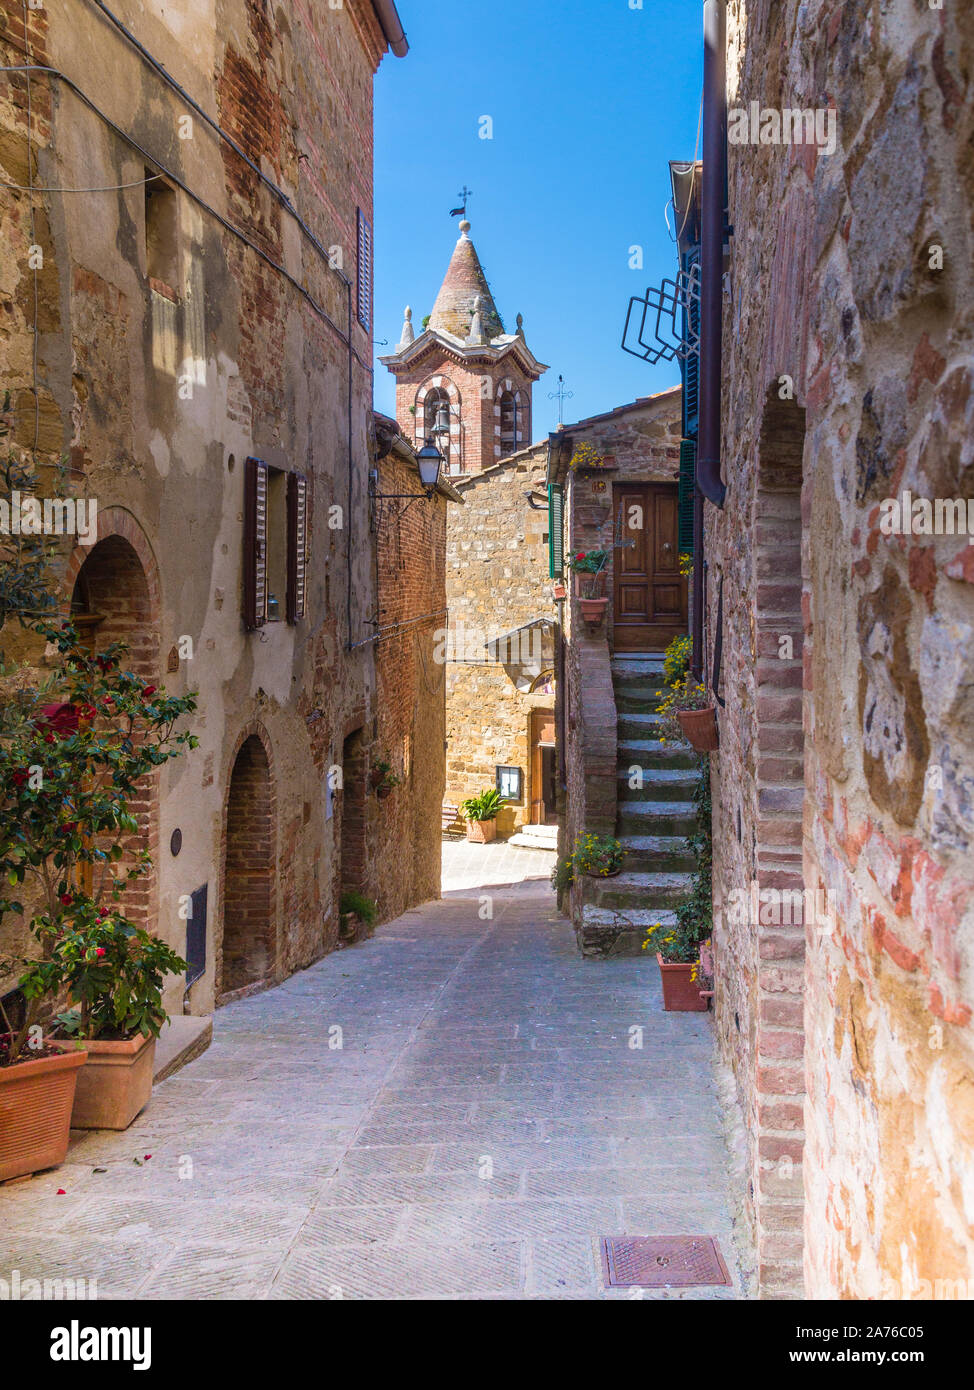 Mittelalterliches Dorf Montisi in der südlichen Toskana, Italien Foto de stock